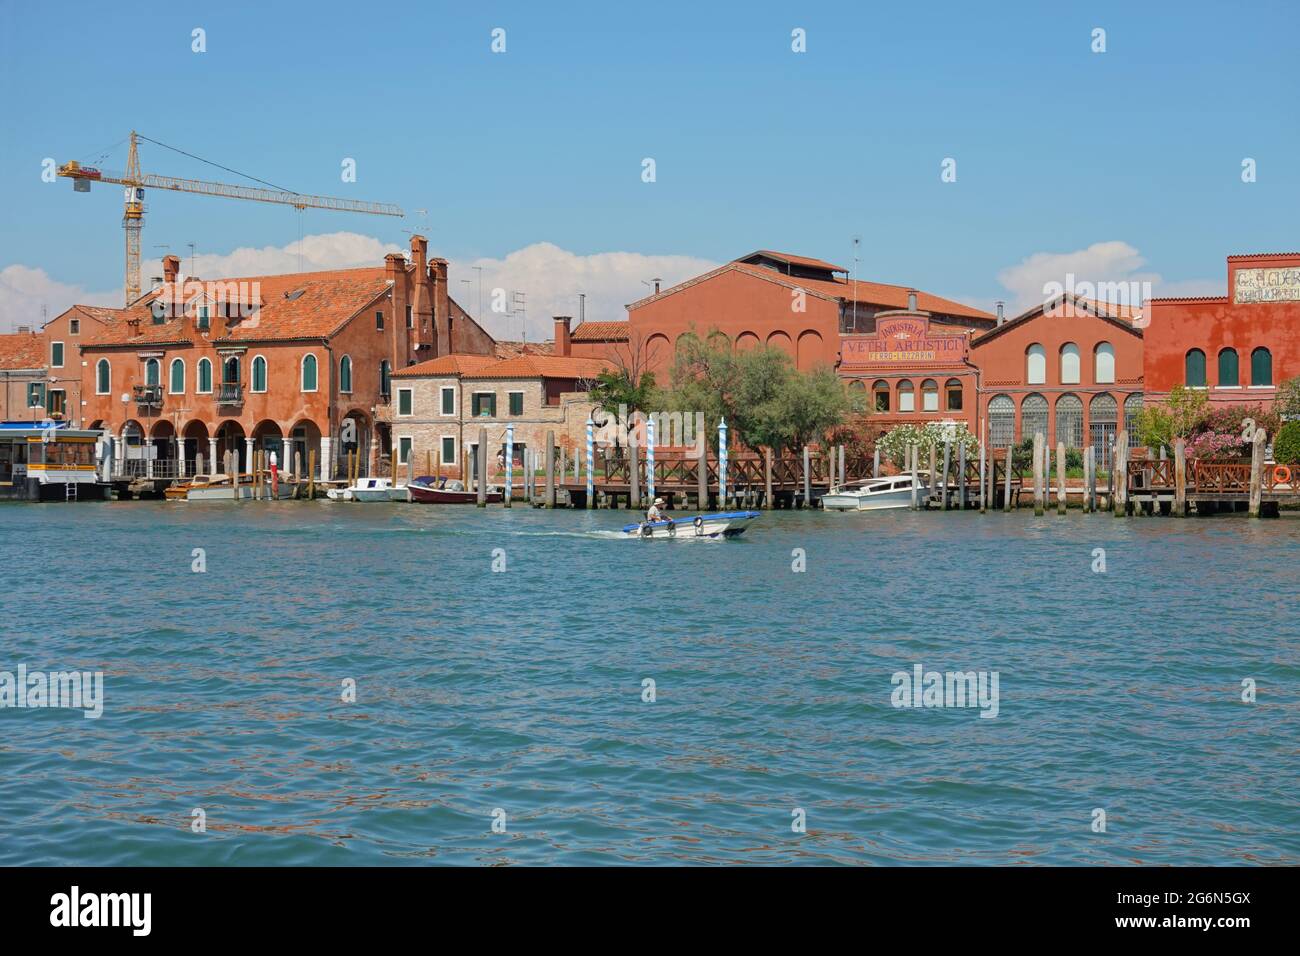 Vetisch Muran, ist eine Inselgruppe nordöstlich der Altstadt von Venedig in der Lagune von Venedig. Sie ist bekannt für ihre Glaskunst, lebt Foto Stock